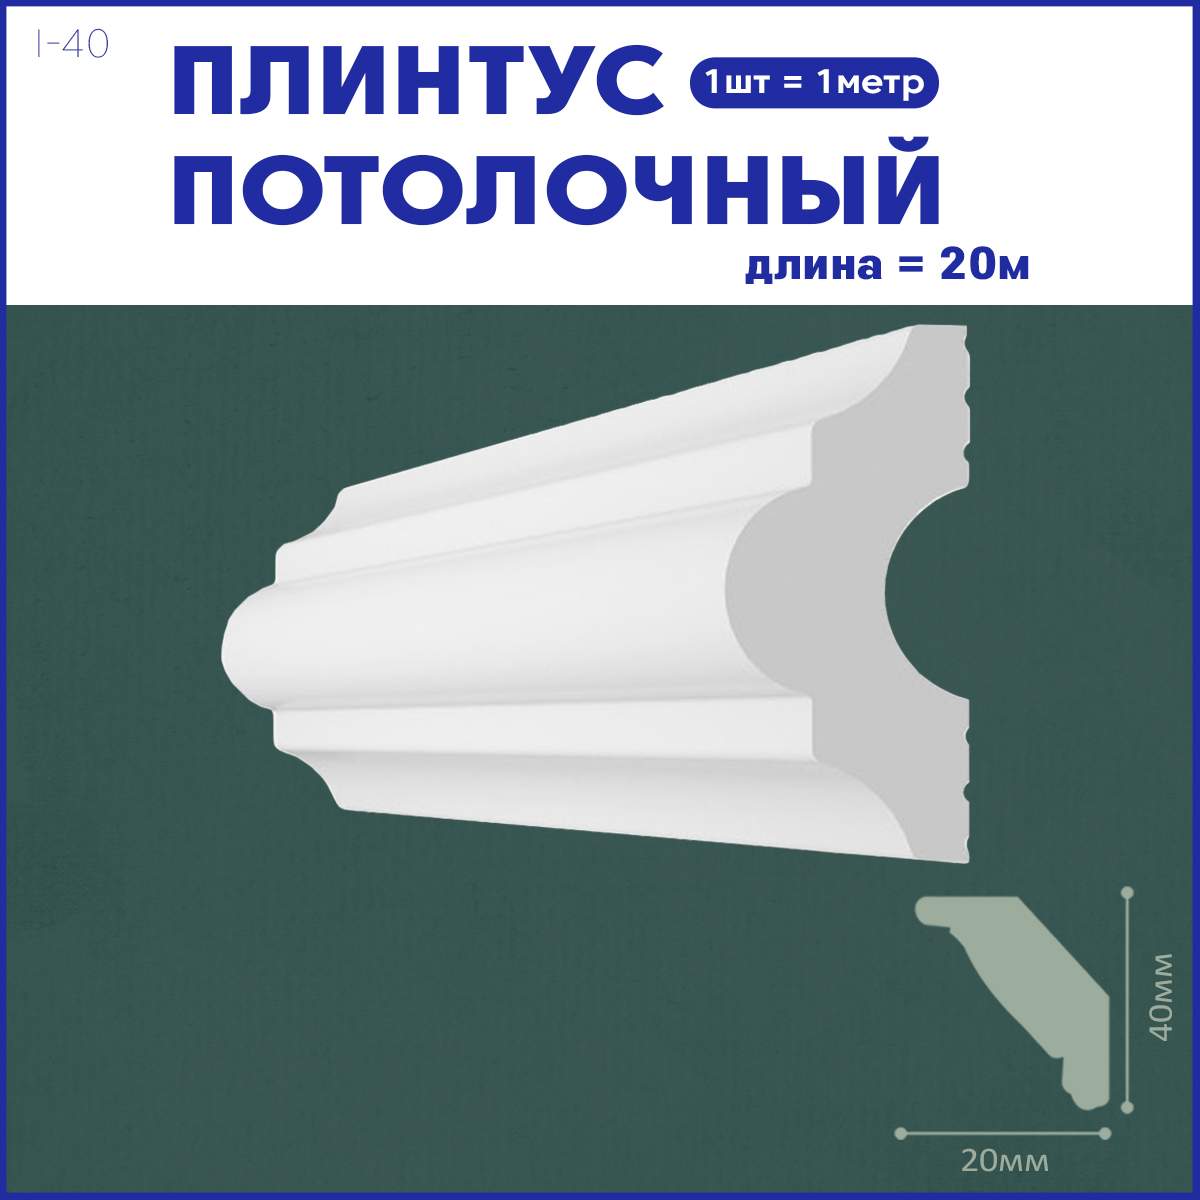 Плинтус потолочный Поставщикофф i-40, комплект 20 шт. x 1м, 20 метров